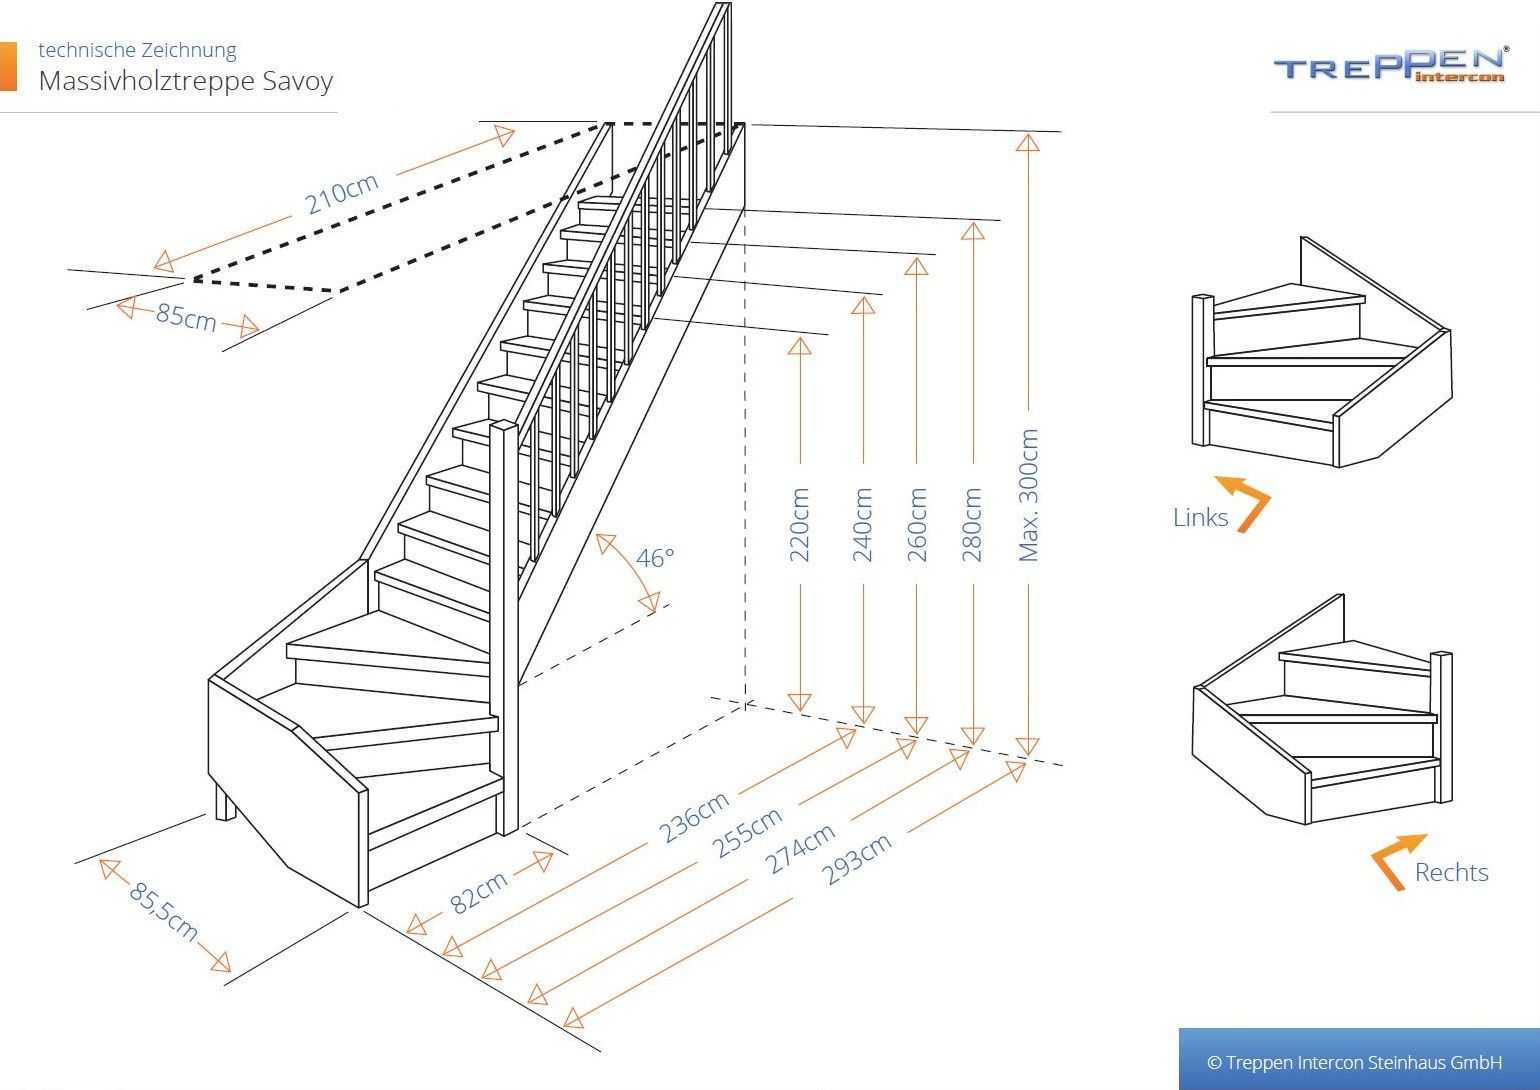 Как сделать лестницу на мансарду своими руками: виды, установка, пошаговая инструкция по монтажу